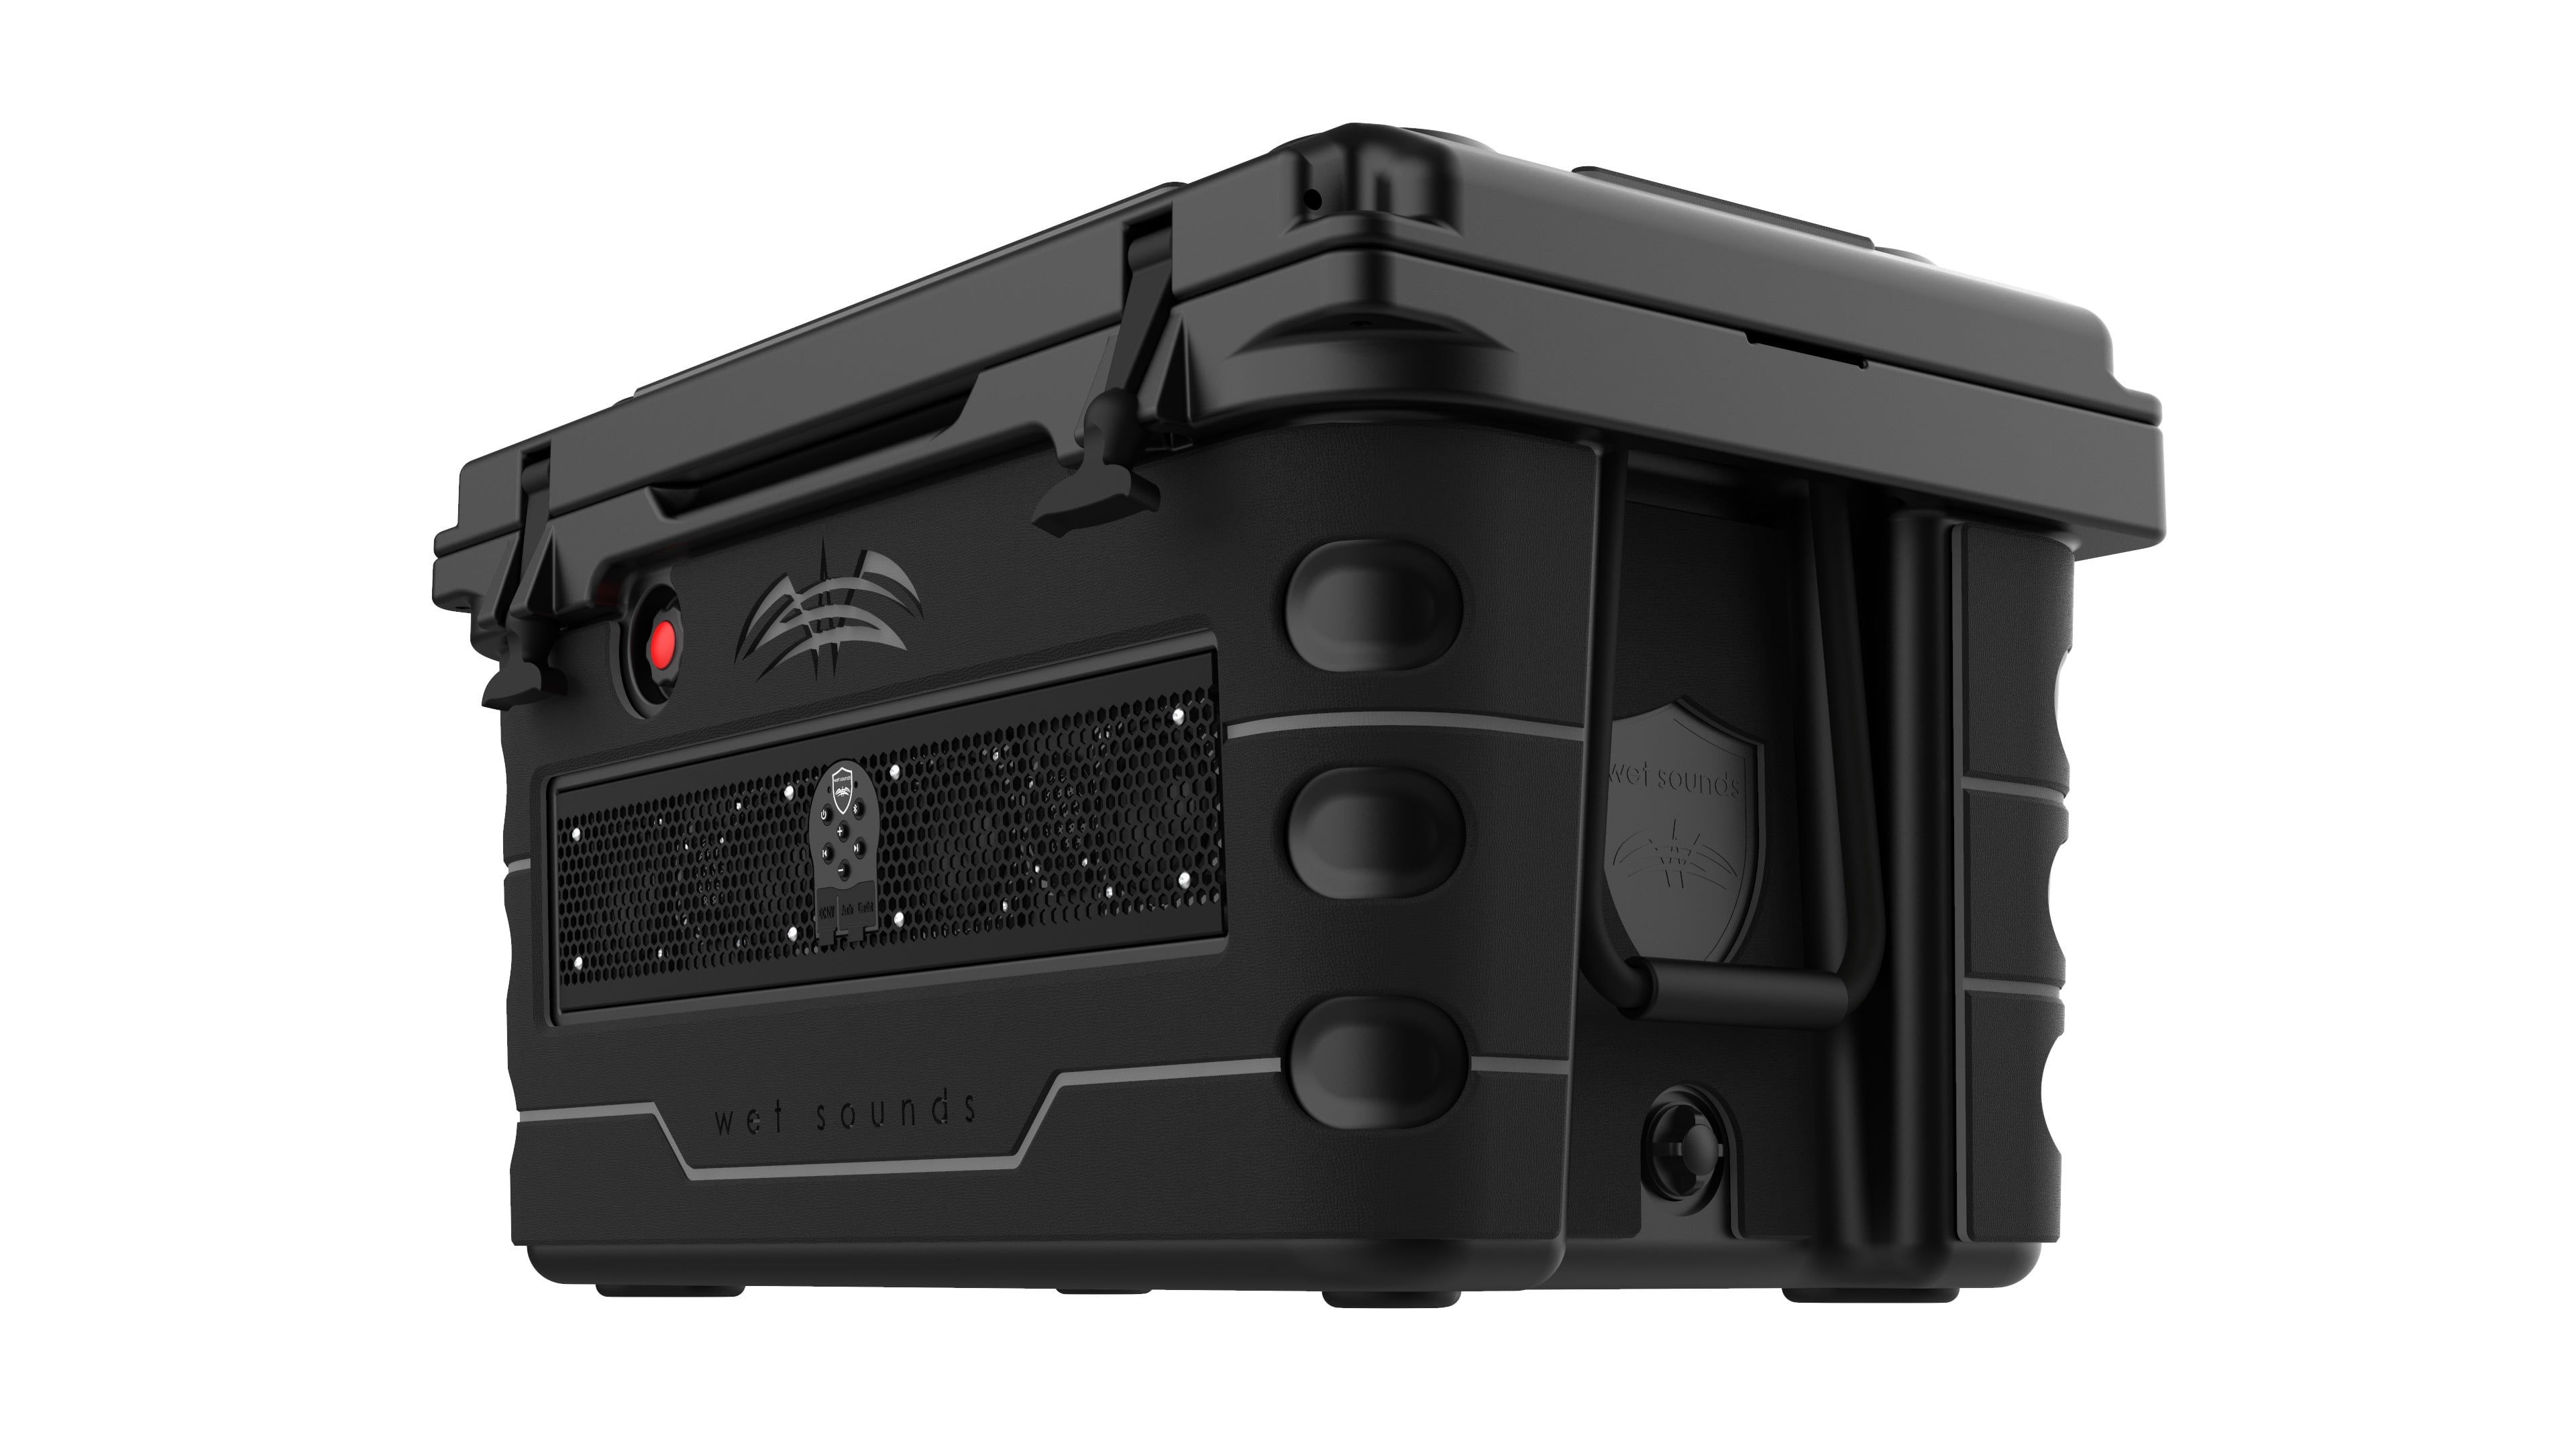 Wet Sounds Stealth SHIVR-55-BLK Black High Output Audio Cooler Speaker  System Full Gator Step Kit Black over Gray